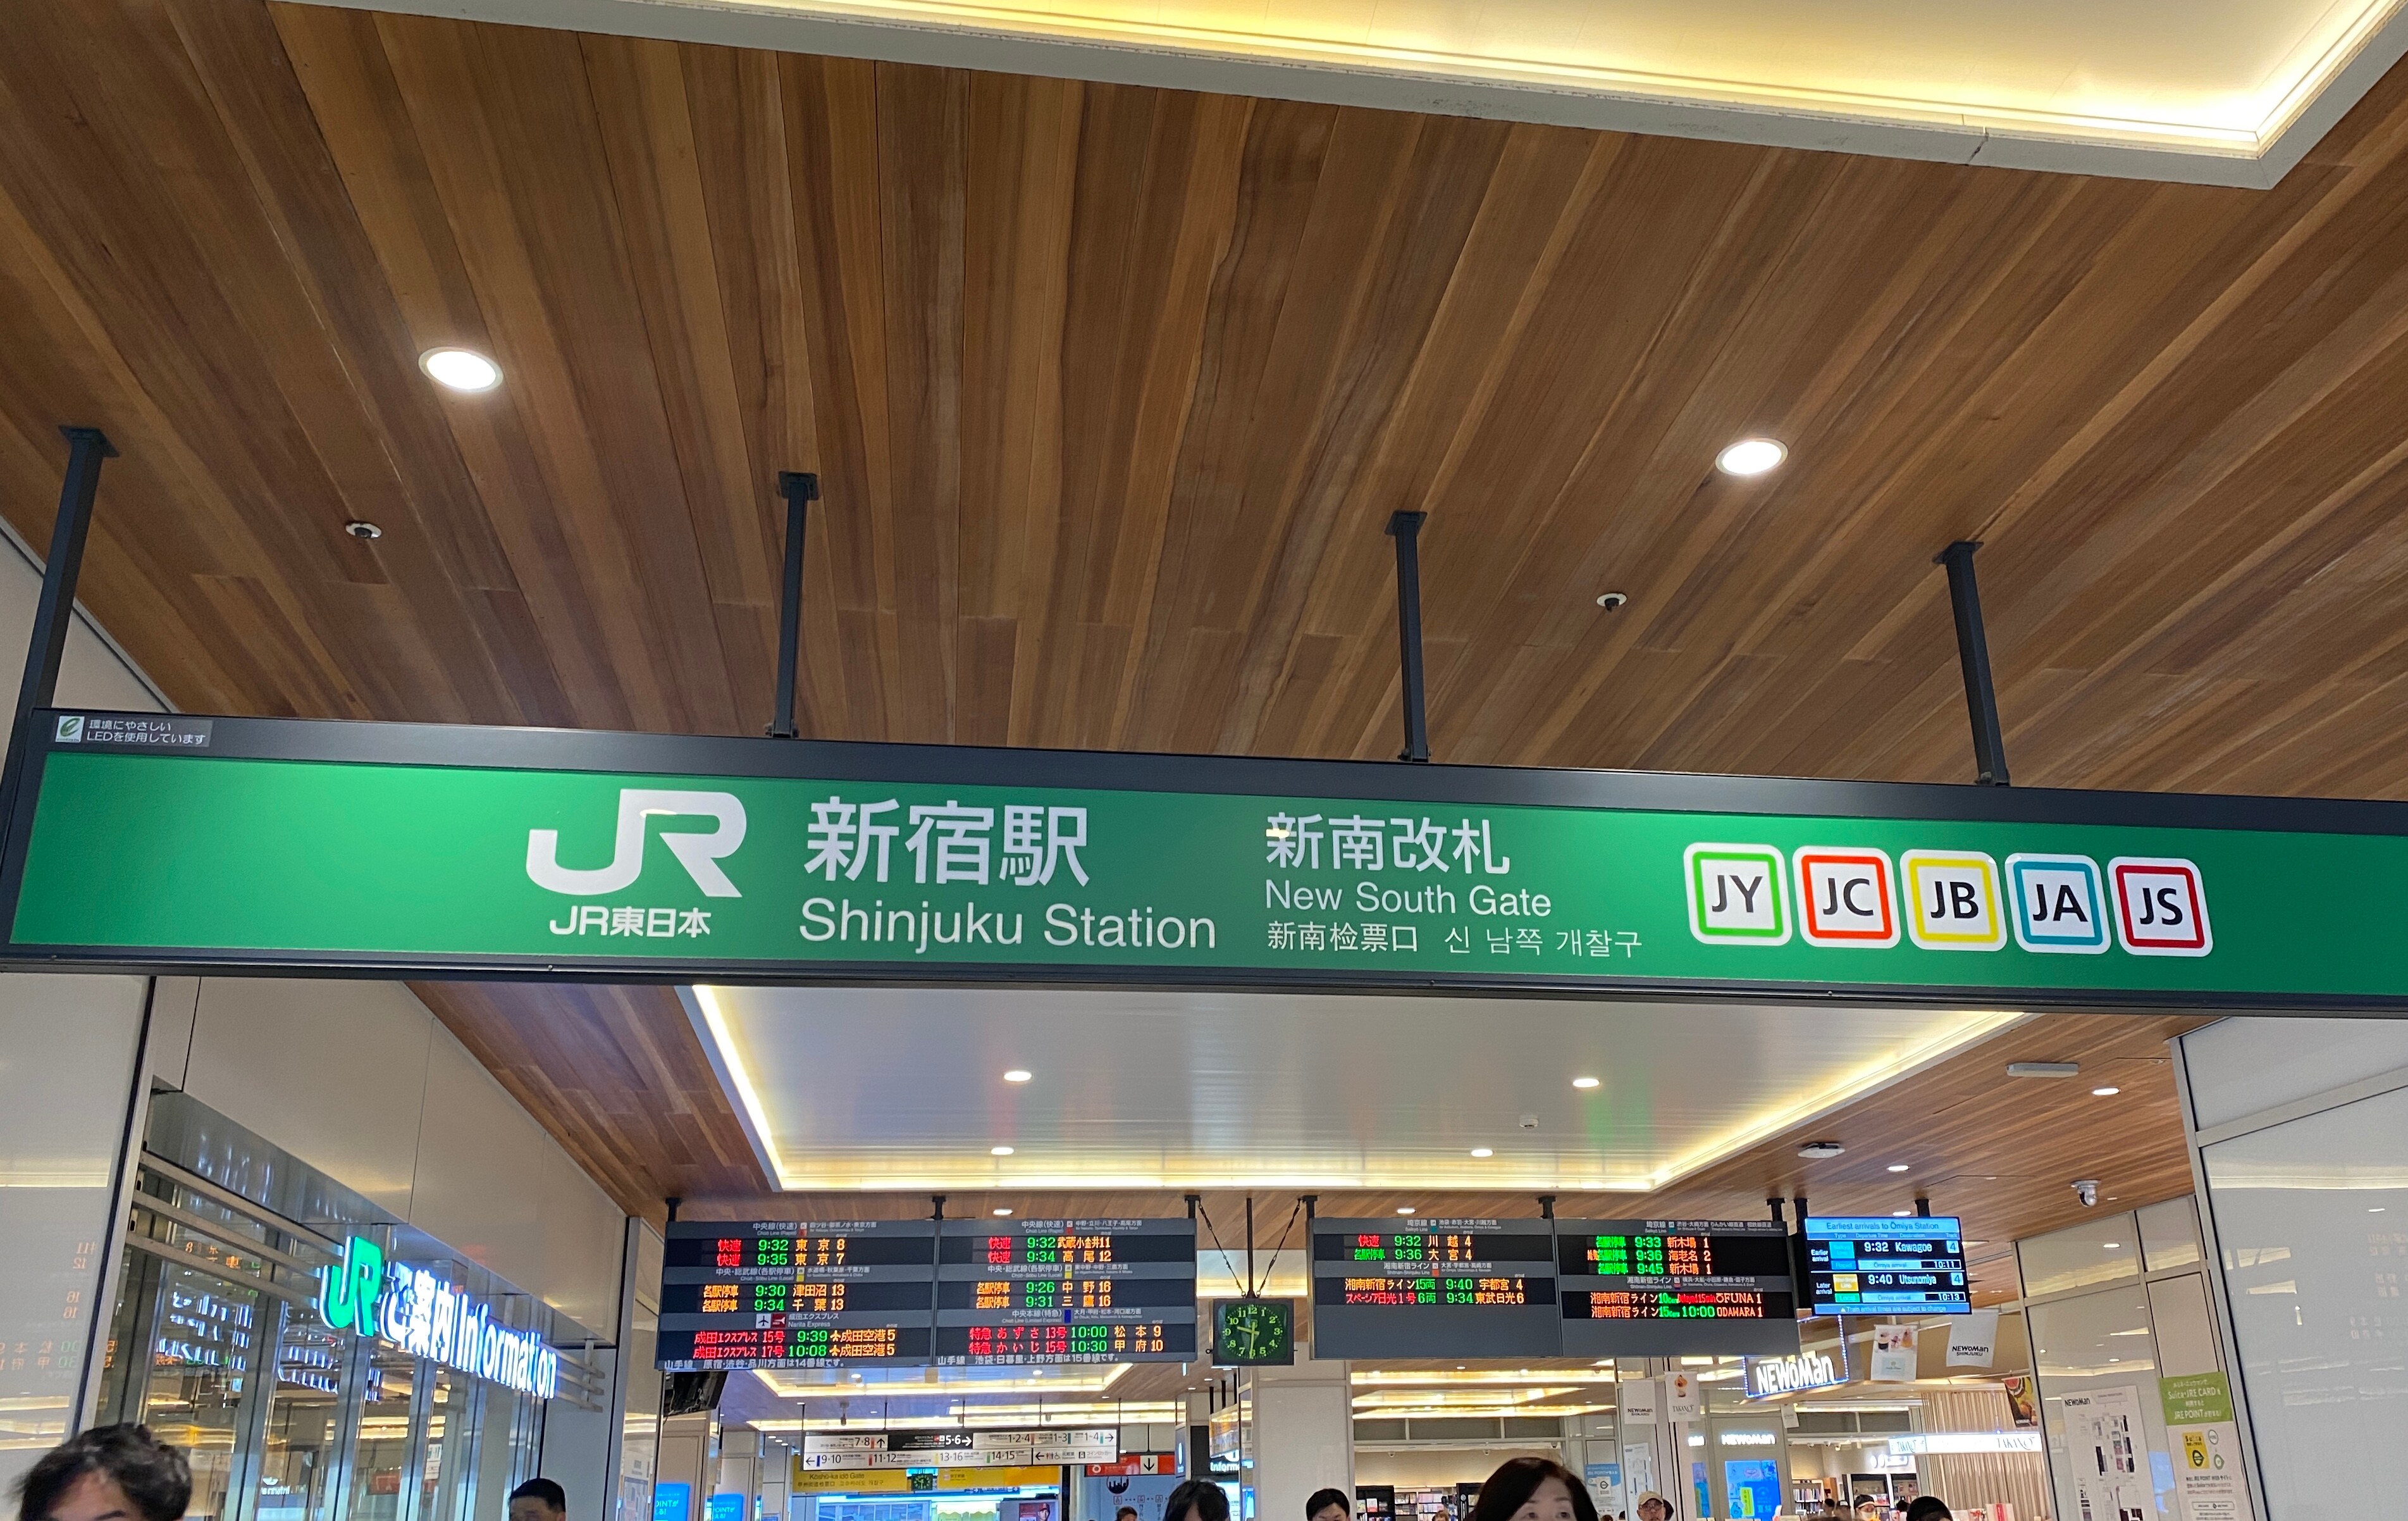 道案内画像01 JR新宿駅 新南改札からお越しの方